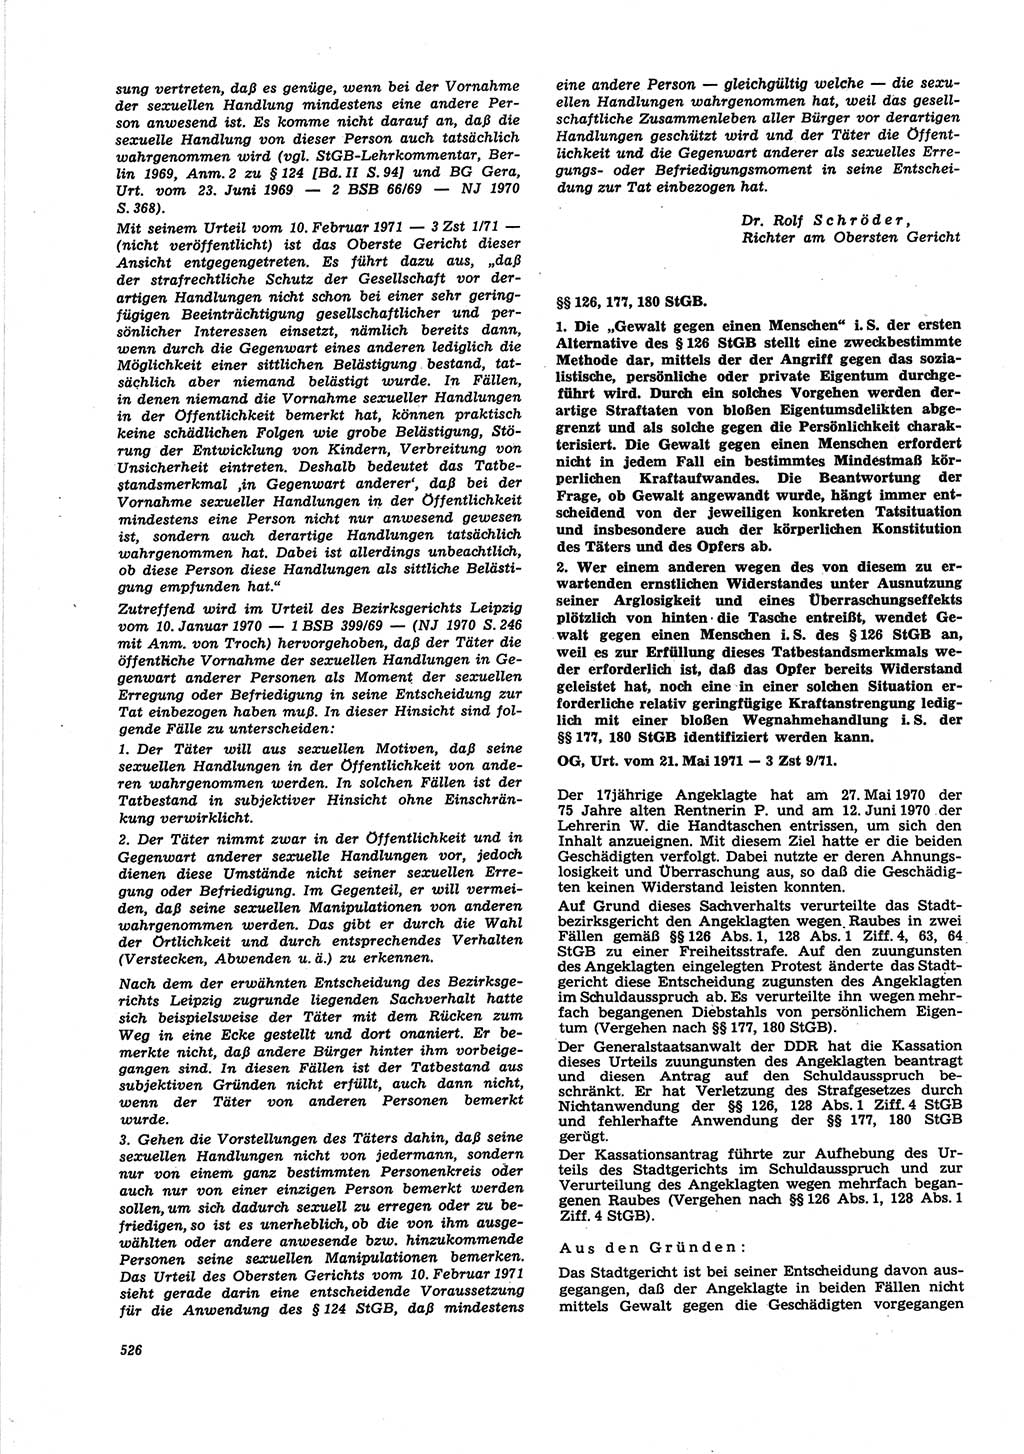 Neue Justiz (NJ), Zeitschrift für Recht und Rechtswissenschaft [Deutsche Demokratische Republik (DDR)], 25. Jahrgang 1971, Seite 526 (NJ DDR 1971, S. 526)